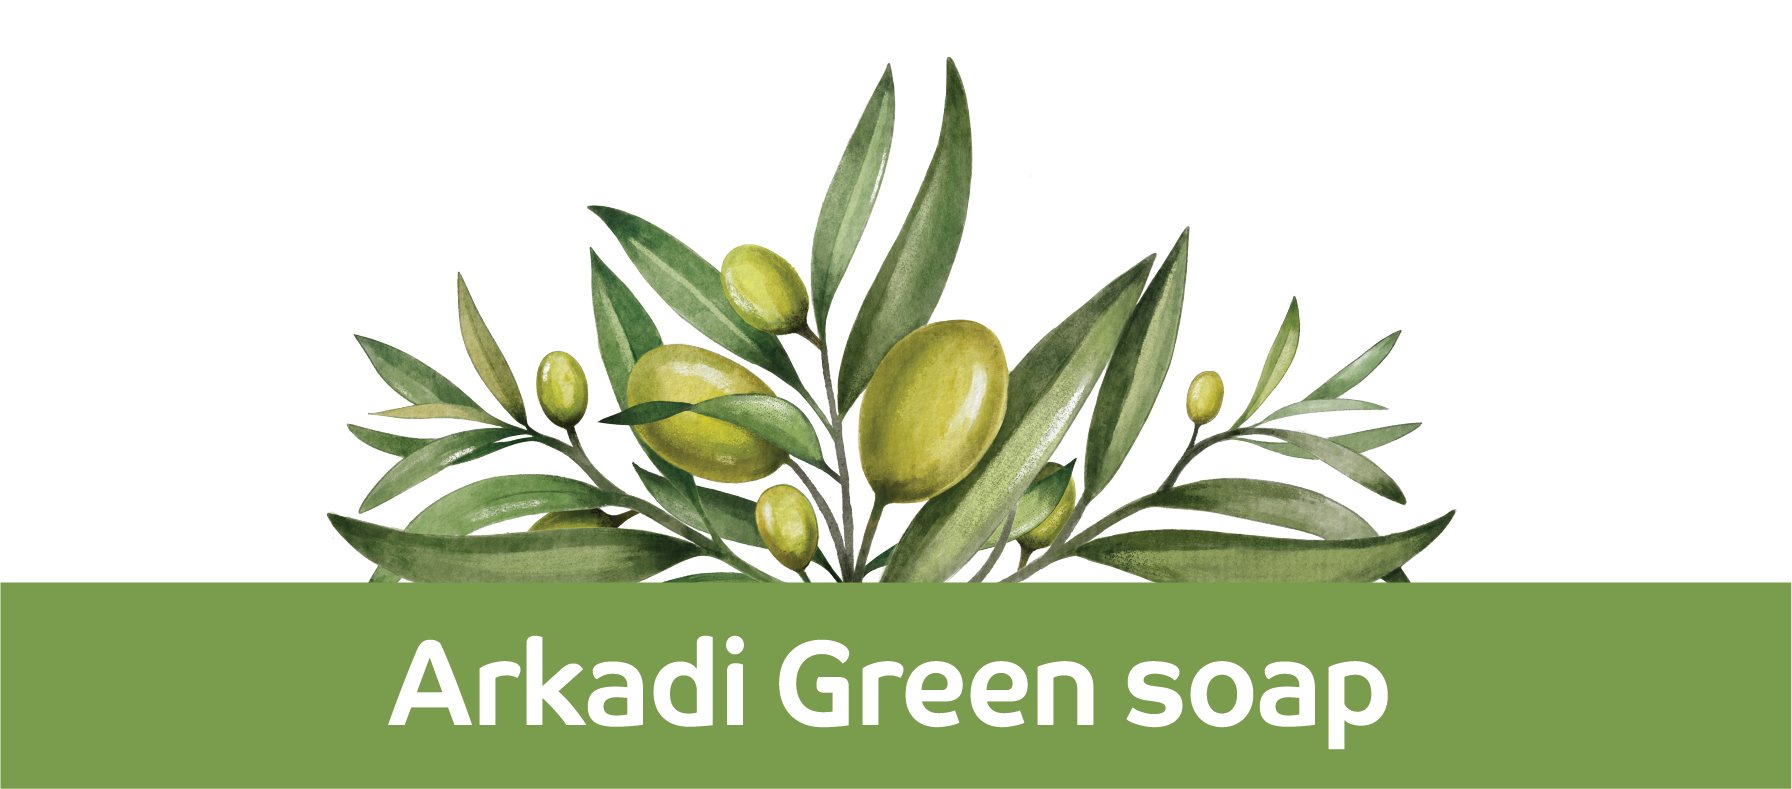 Arkadi Classic Green Soap bar